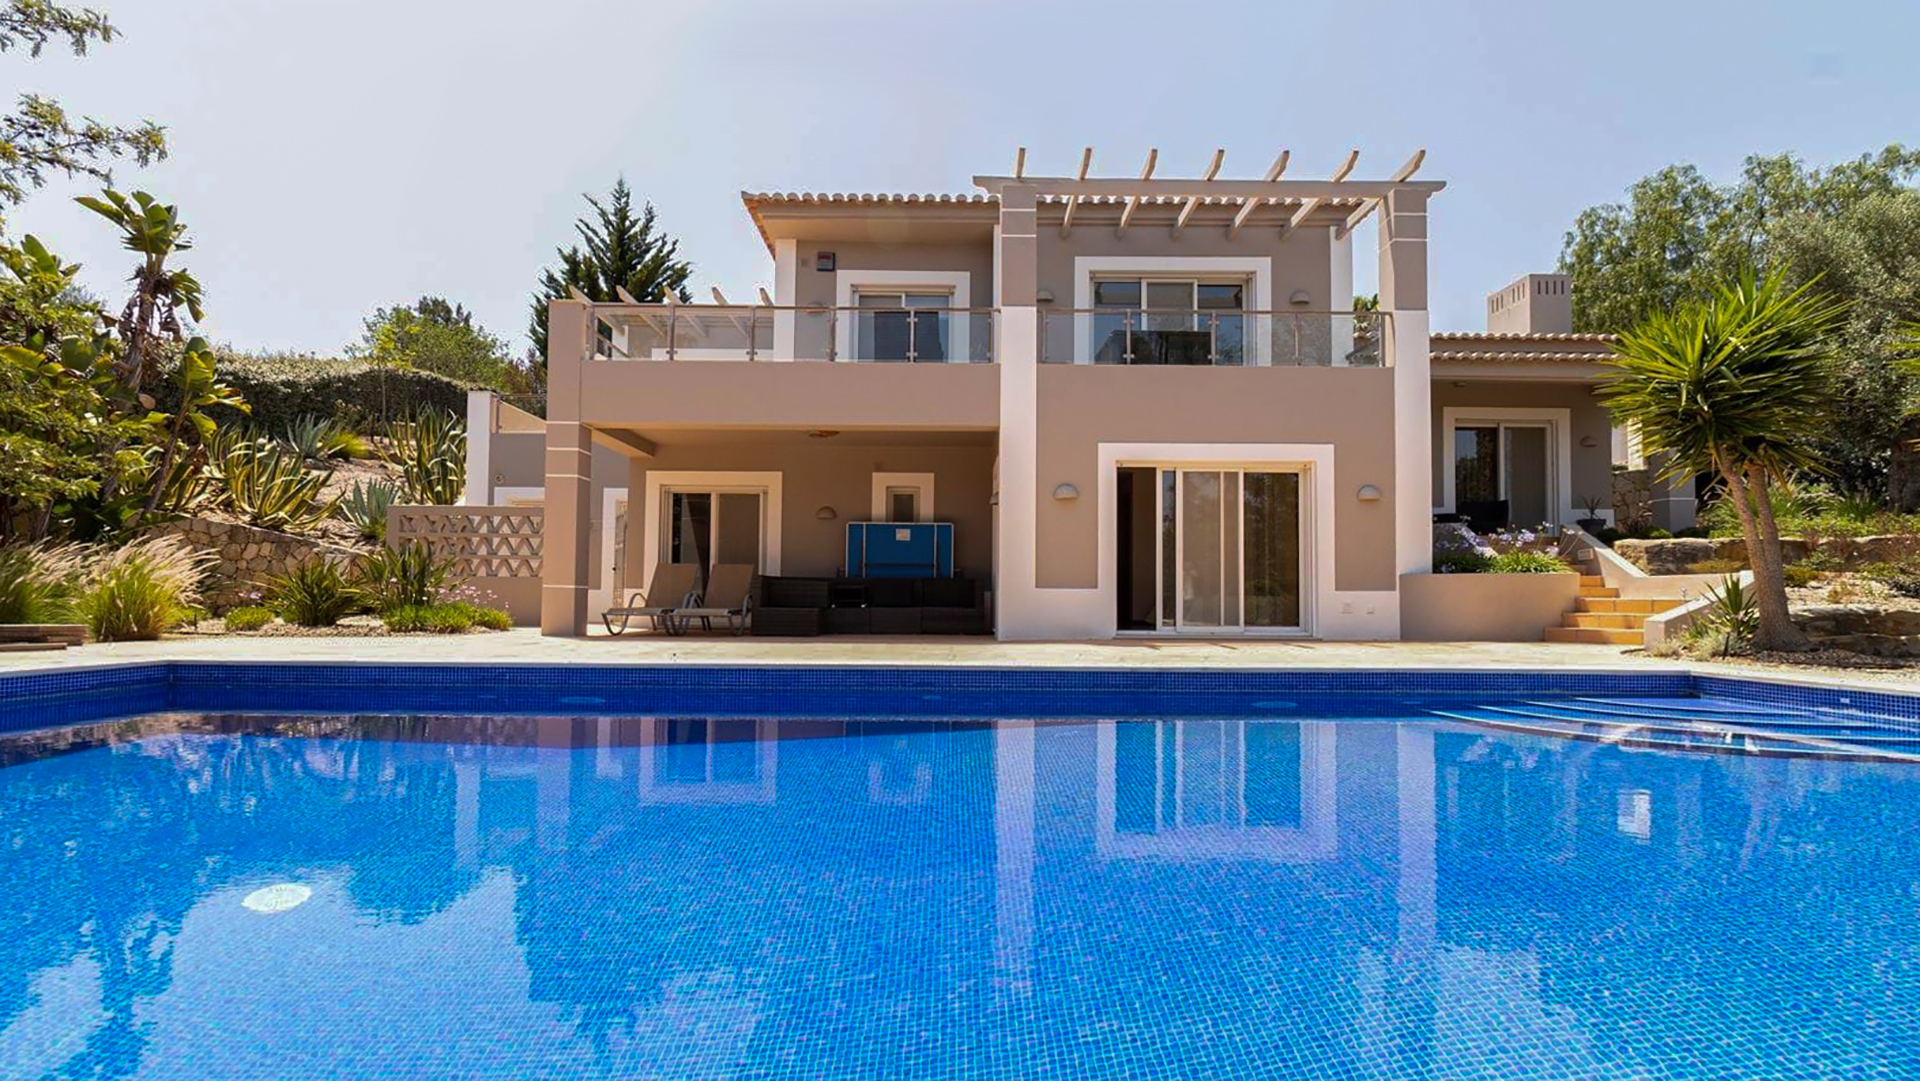 Geräumige 3 SZ Villa mit Pool in Golfresort Nahe Carvoeiro, West Algarve | PCG2148 Villa mit 3 Schlafzimmern mit en- suite Badezimmern und Pool, umgeben von einem grossen, gepflegten Garten in beliebtem Golfresort. Perfekt als permanenter Wohnsitz und zur Vermietung geeignet.